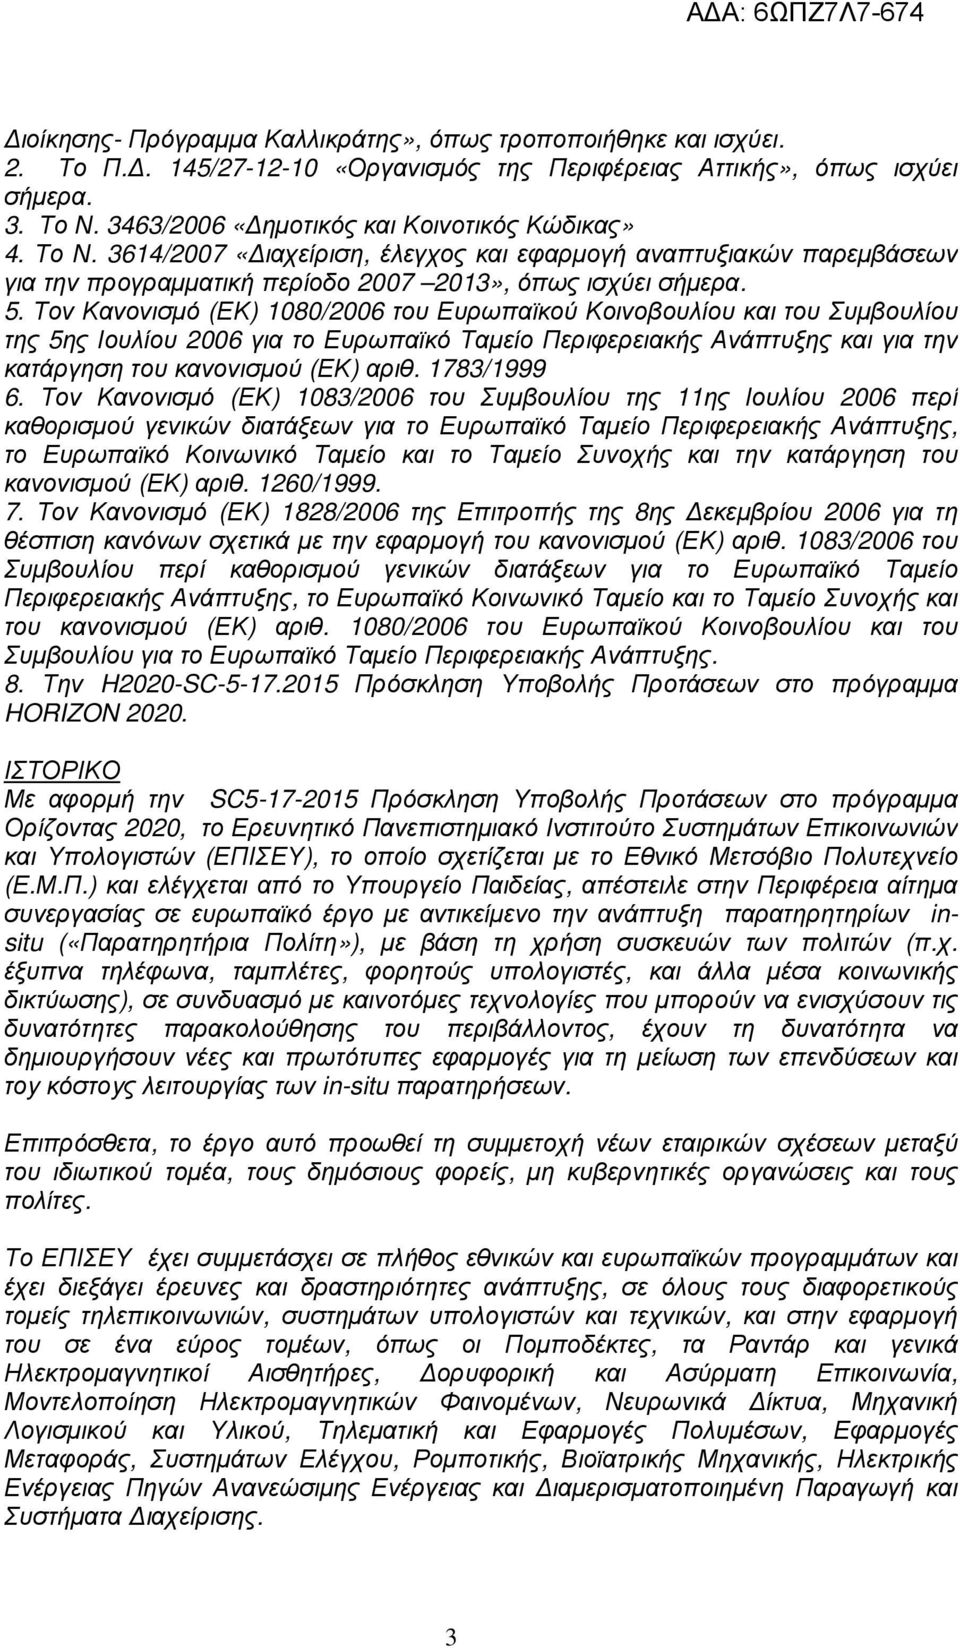 Τον Κανονισµό (ΕΚ) 1080/2006 του Ευρωπαϊκού Κοινοβουλίου και του Συµβουλίου της 5ης Ιουλίου 2006 για το Ευρωπαϊκό Ταµείο Περιφερειακής Ανάπτυξης και για την κατάργηση του κανονισµού (ΕΚ) αριθ.